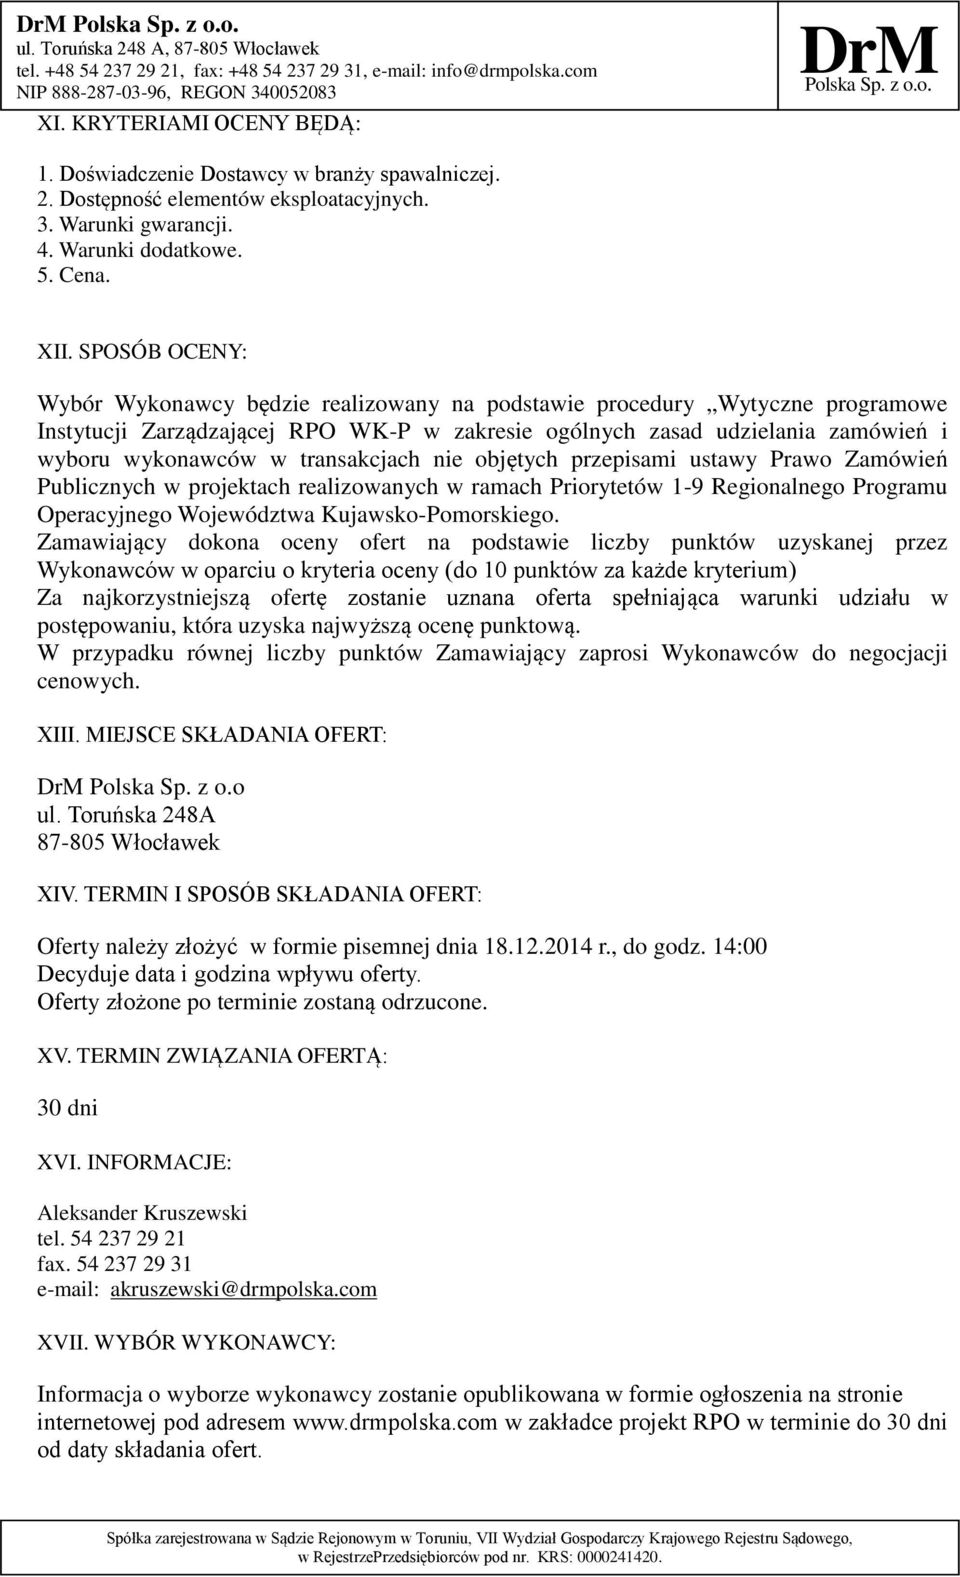 transakcjach nie objętych przepisami ustawy Prawo Zamówień Publicznych w projektach realizowanych w ramach Priorytetów 1-9 Regionalnego Programu Operacyjnego Województwa Kujawsko-Pomorskiego.